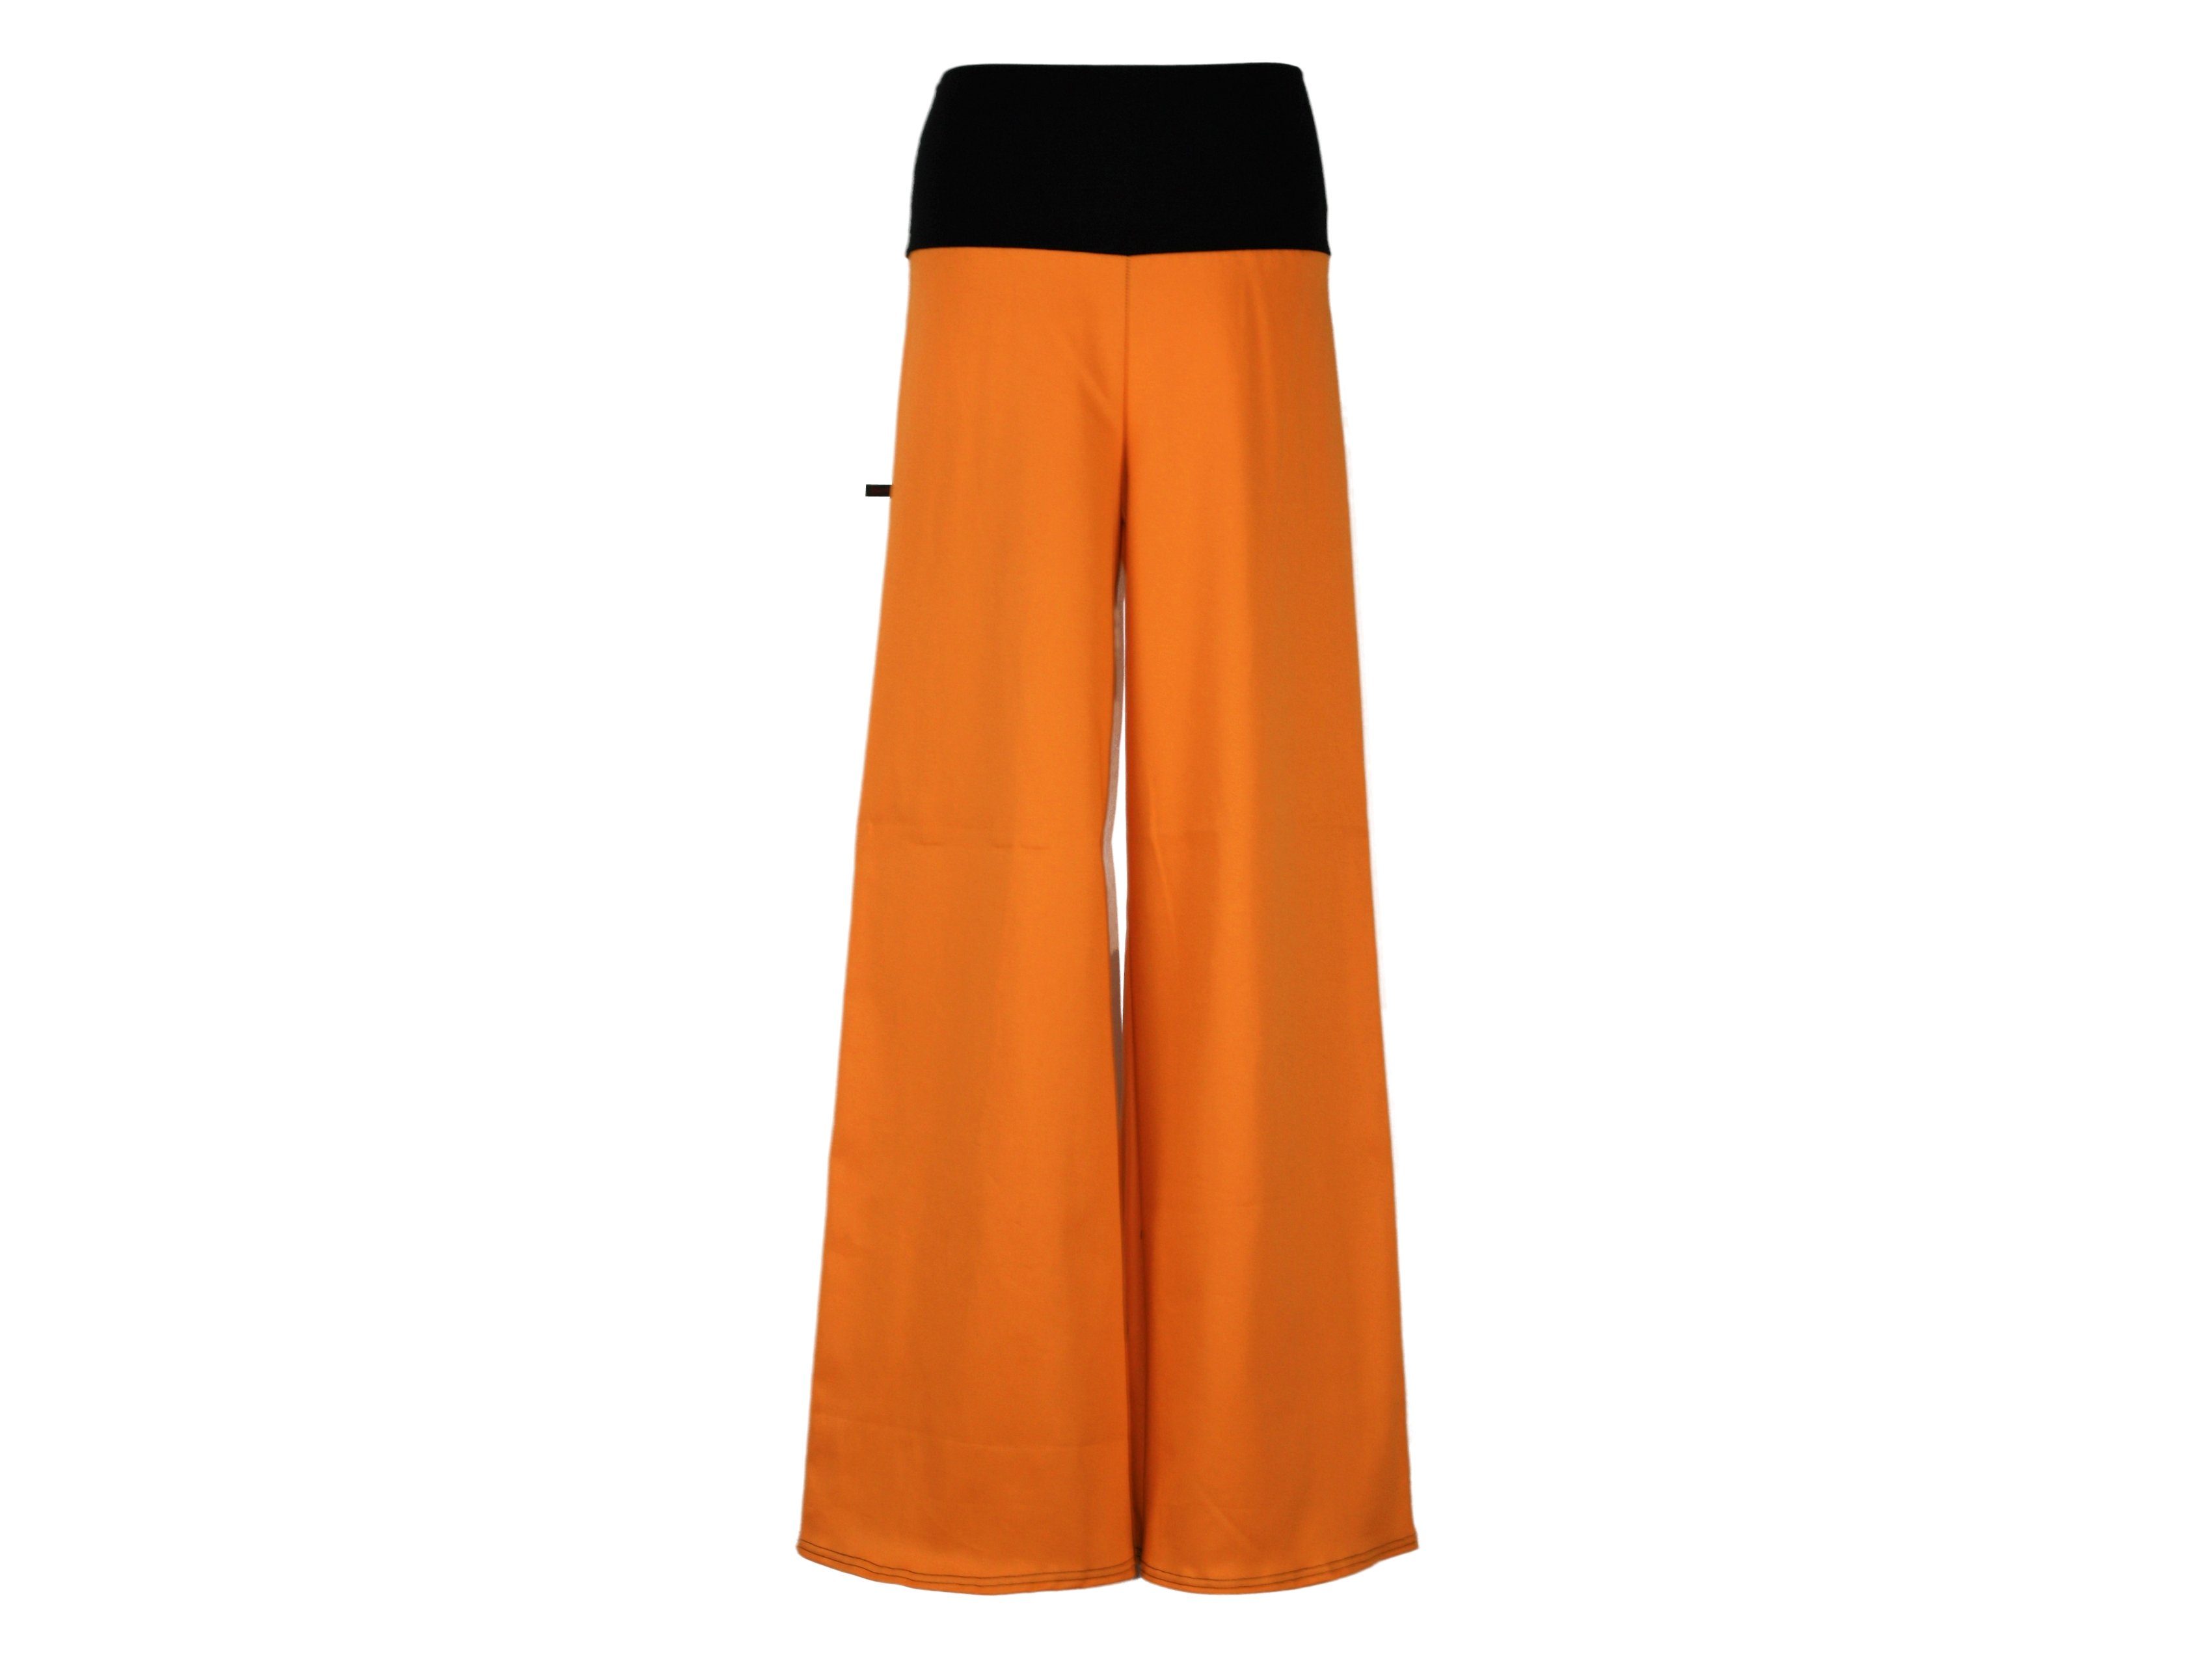 Stretch-Jeans Orange weites Marlene design dunkle Stil Bein